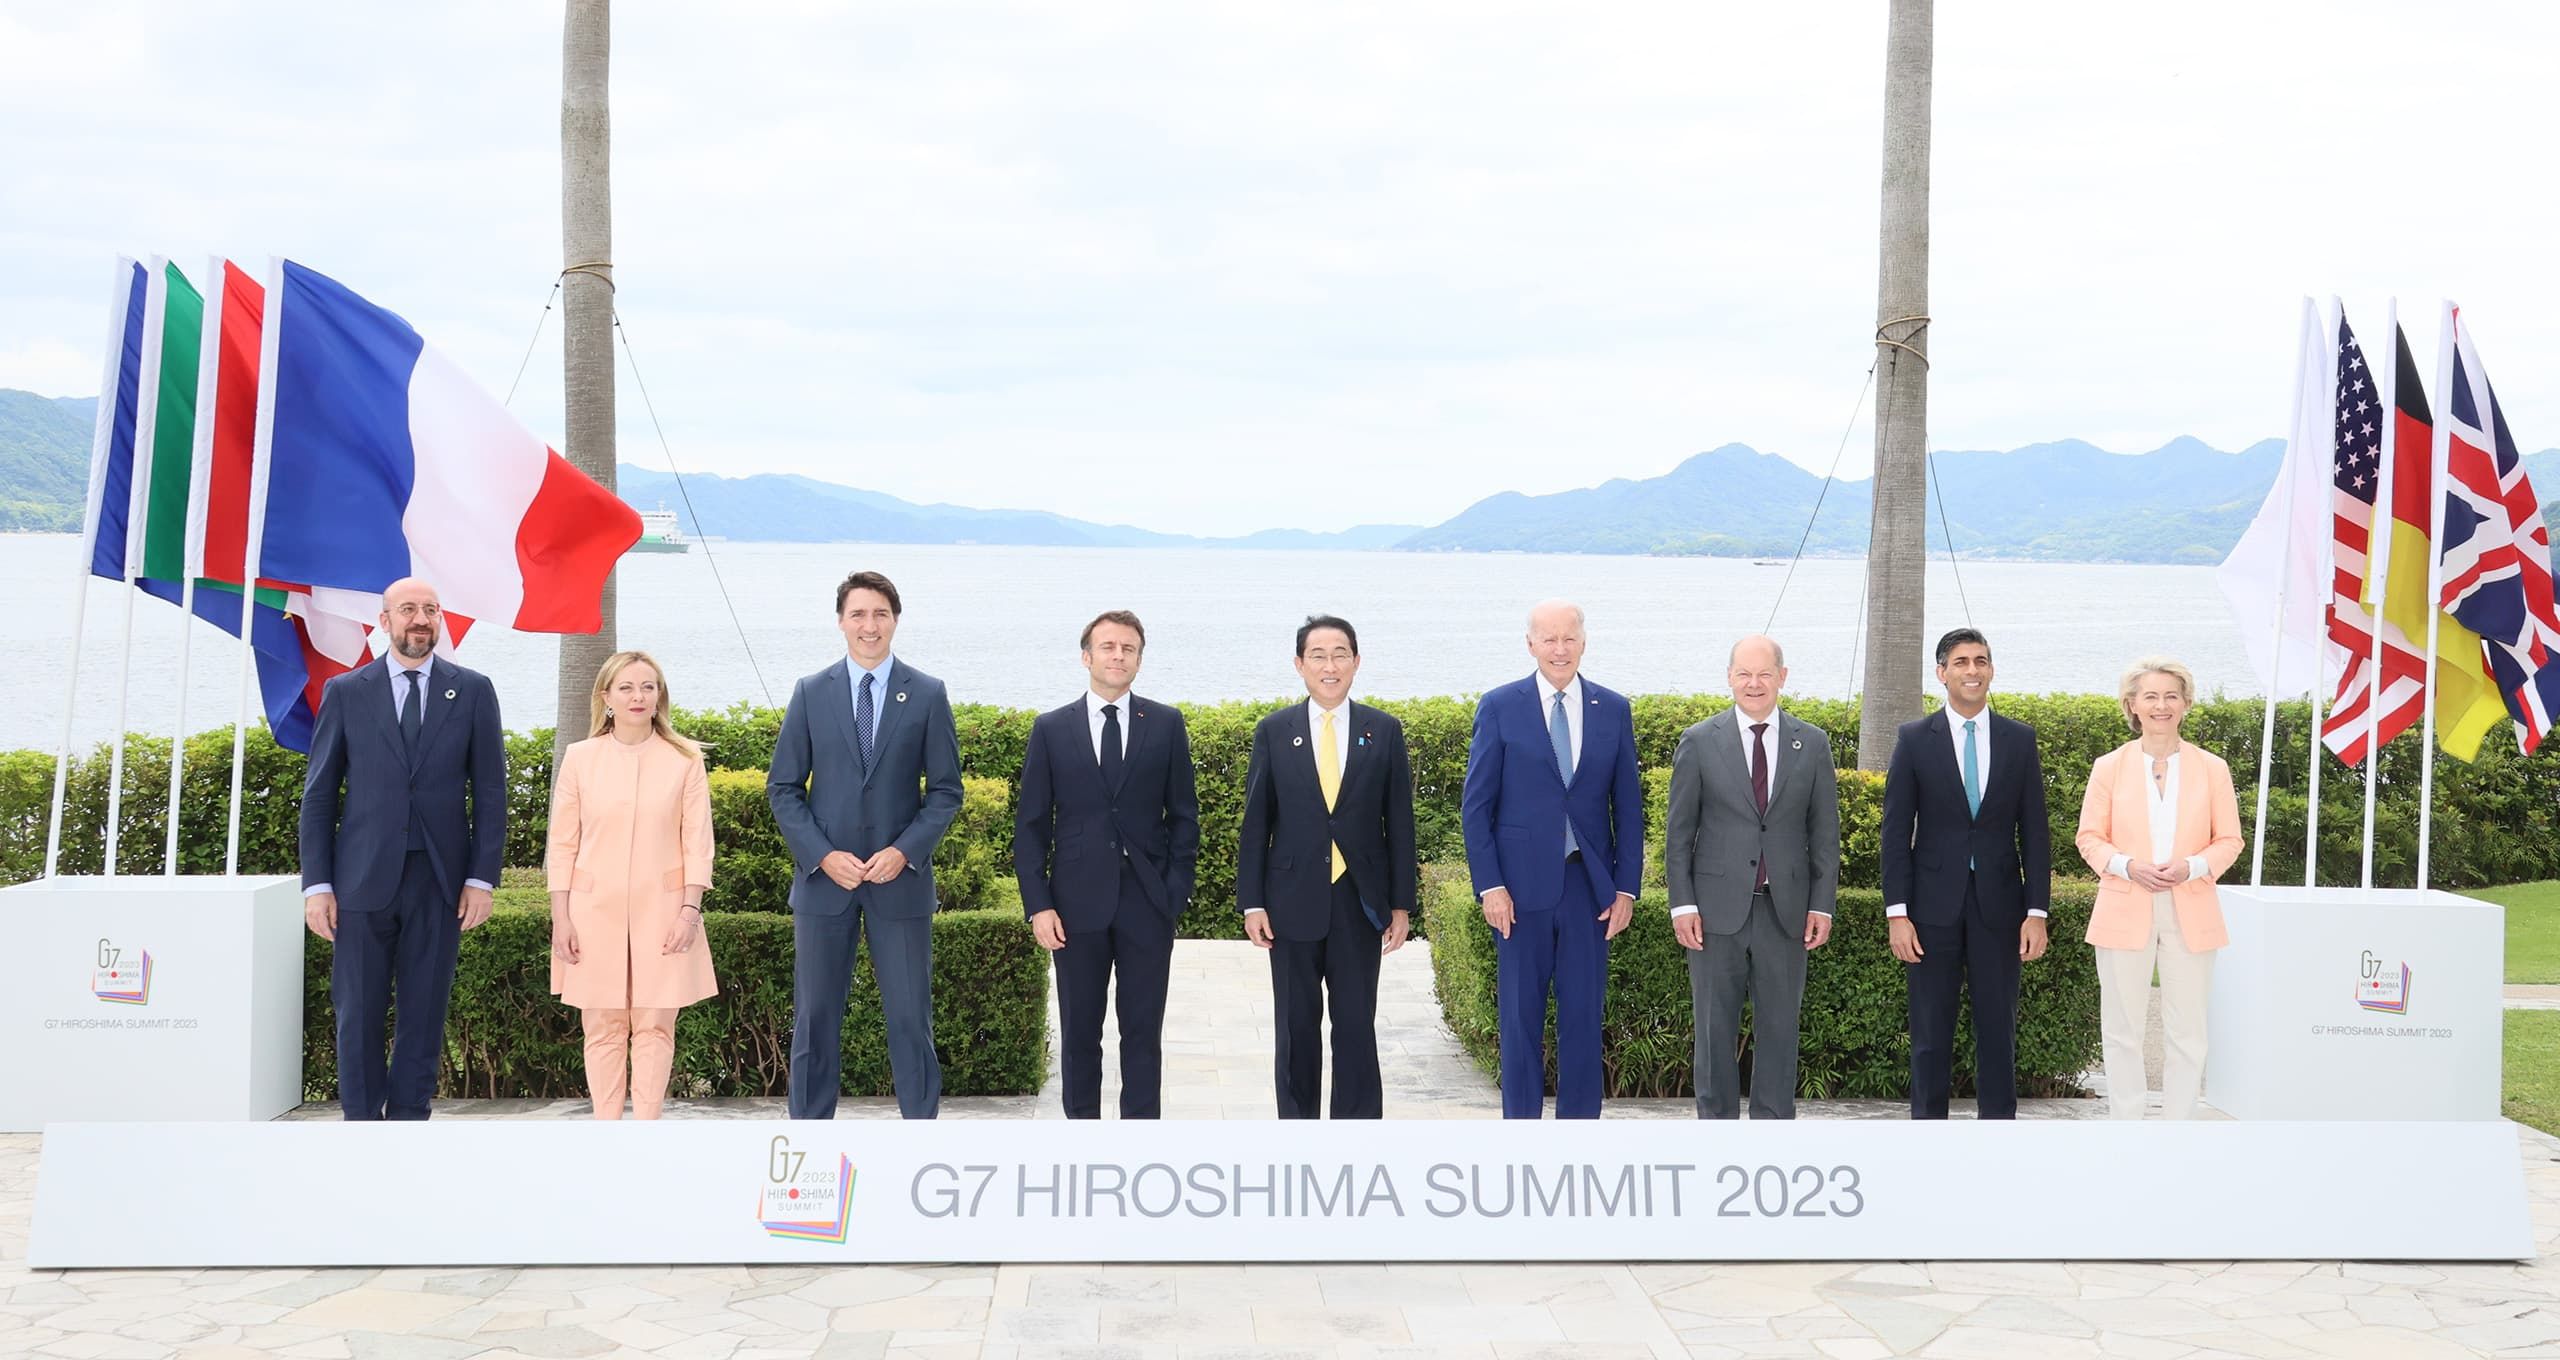 Hirosimában a G7 vezetői támogatták Zelenszkij békeképletét, és felszólították Oroszországot, hogy vonja ki csapatait Ukrajnából